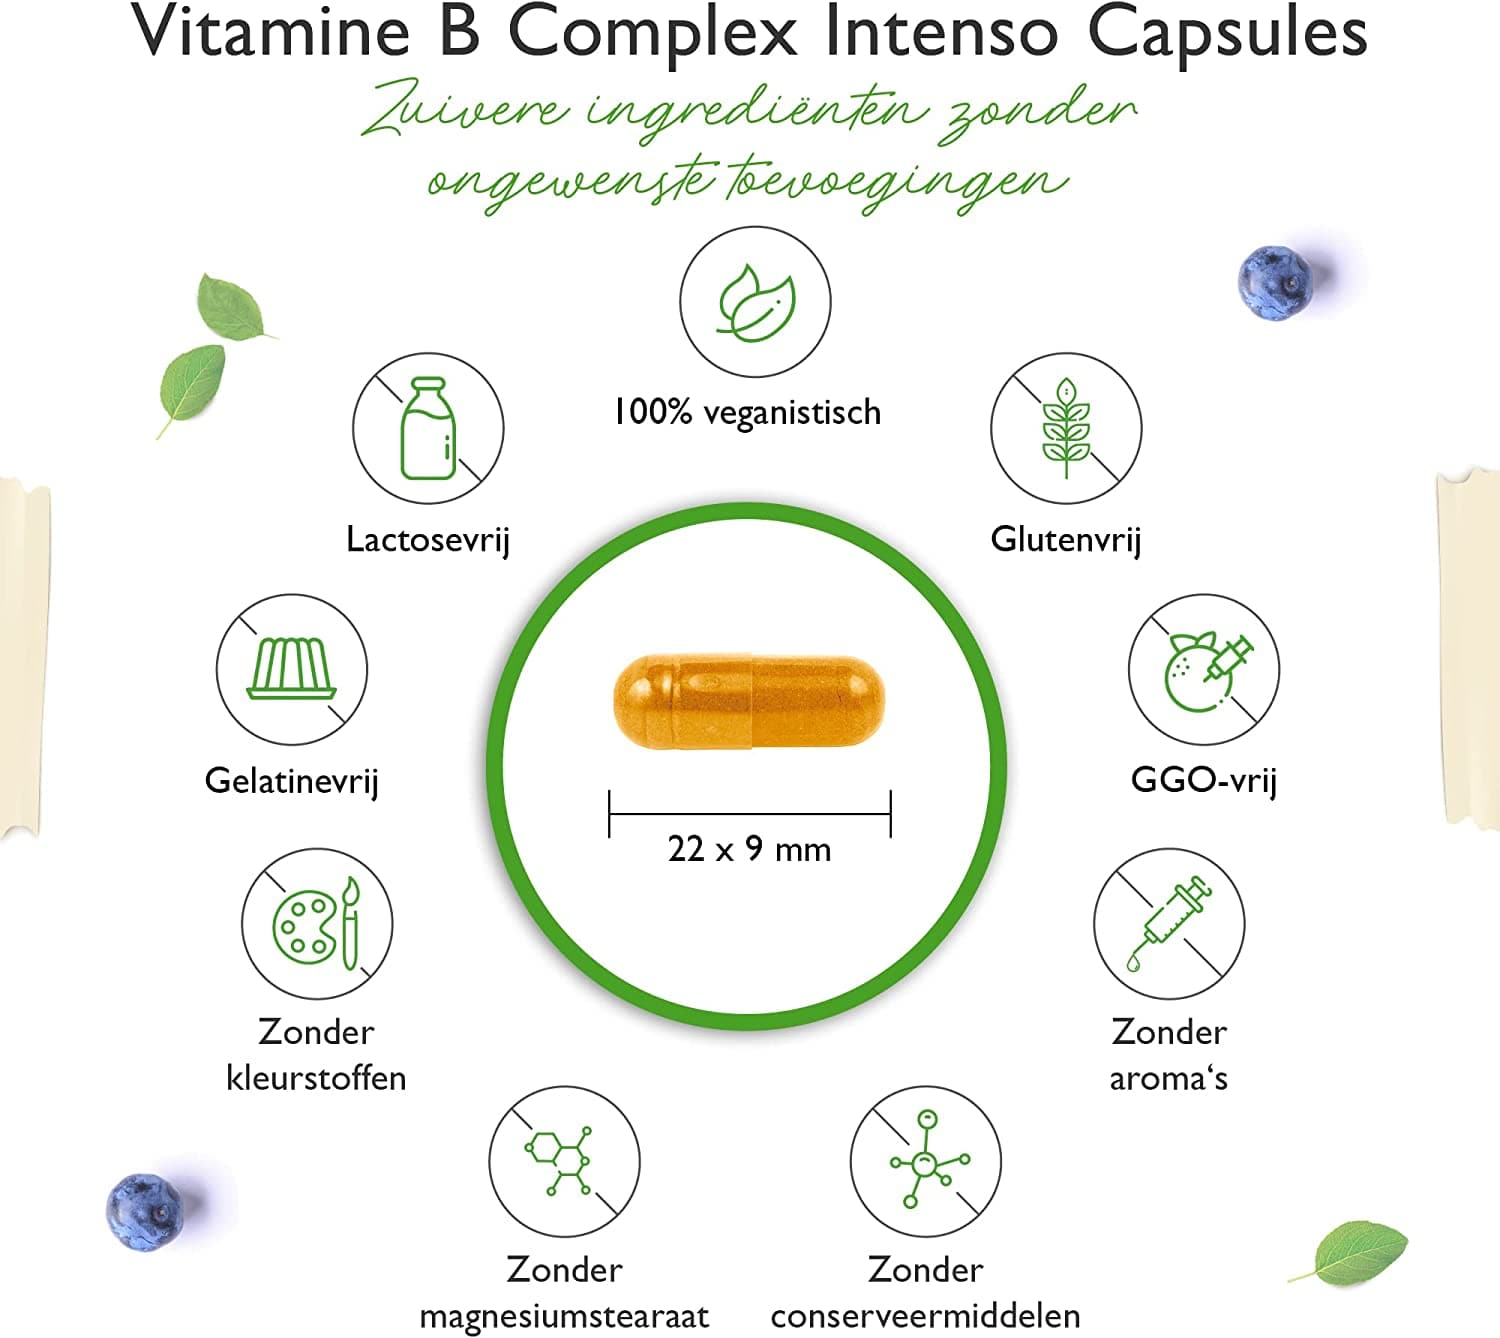 Vitamine B-complex Intenso - 240 capsules (6 maanden) - Premium: Met bio-actieve vitamine B-vormen + co-factoren - Tot 10 keer hogere dosering dan andere vitamine B-complexen - Veganistisch